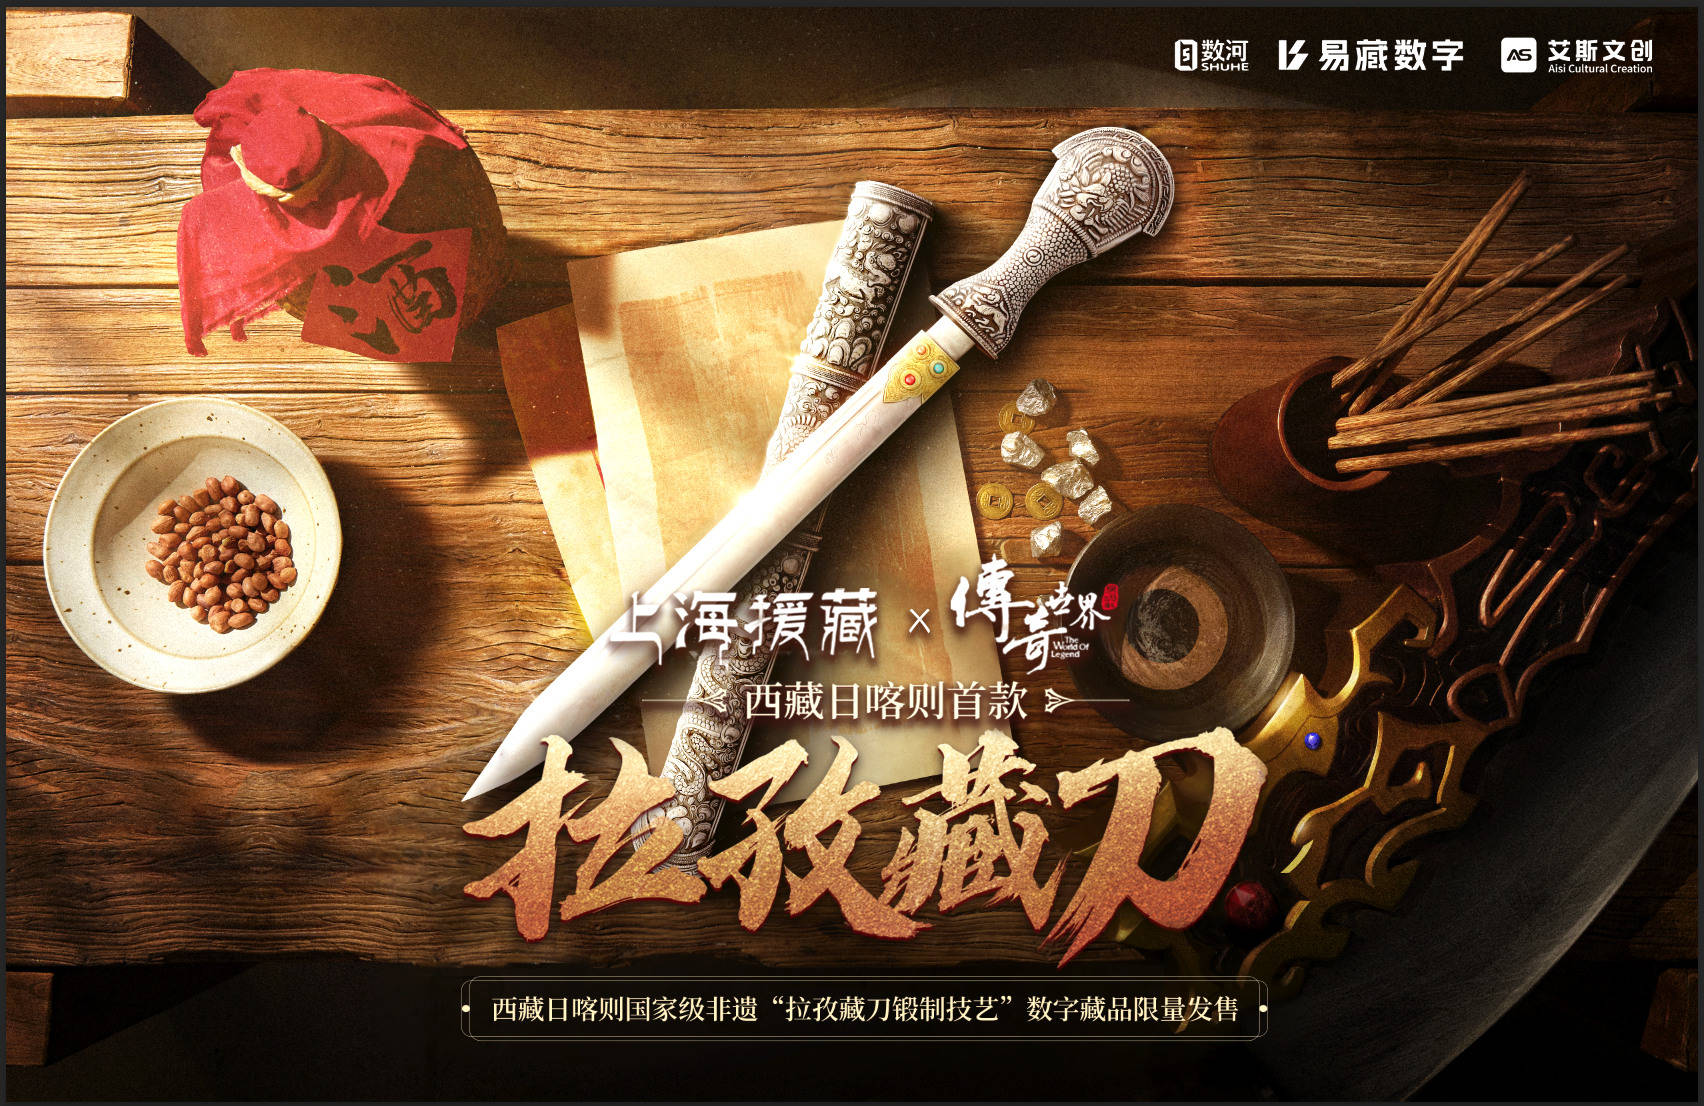 “拉孜藏刀”闪耀ChinaJoy，上海援藏牵手《传奇世界》共推数字藏品